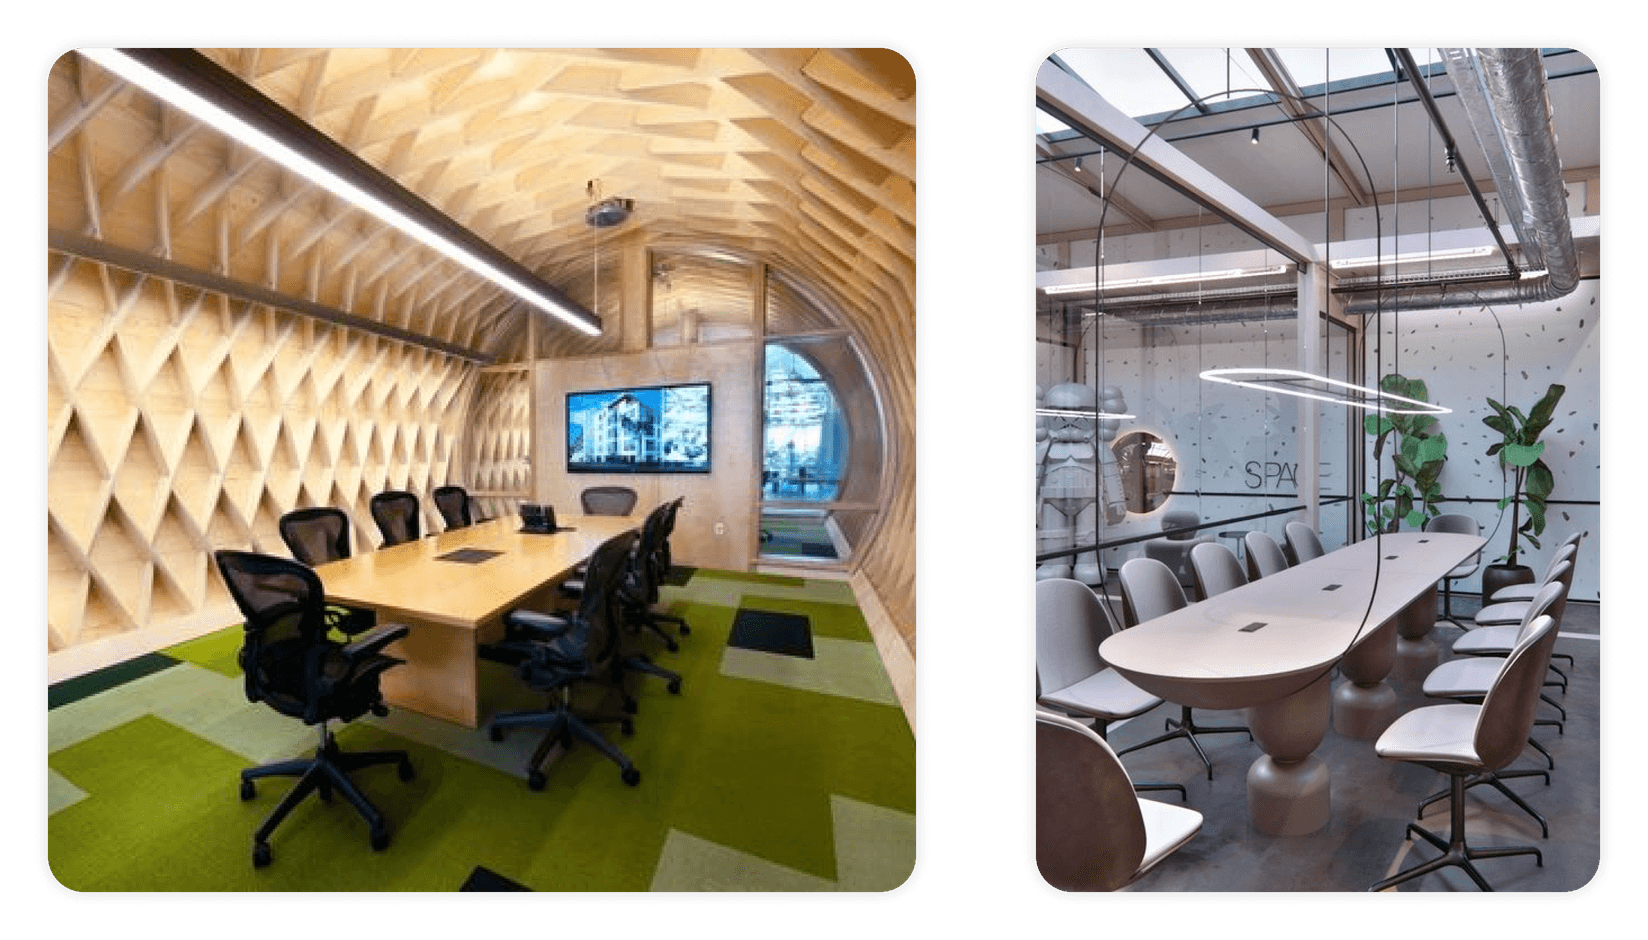 Futuristic meeting room design ideas